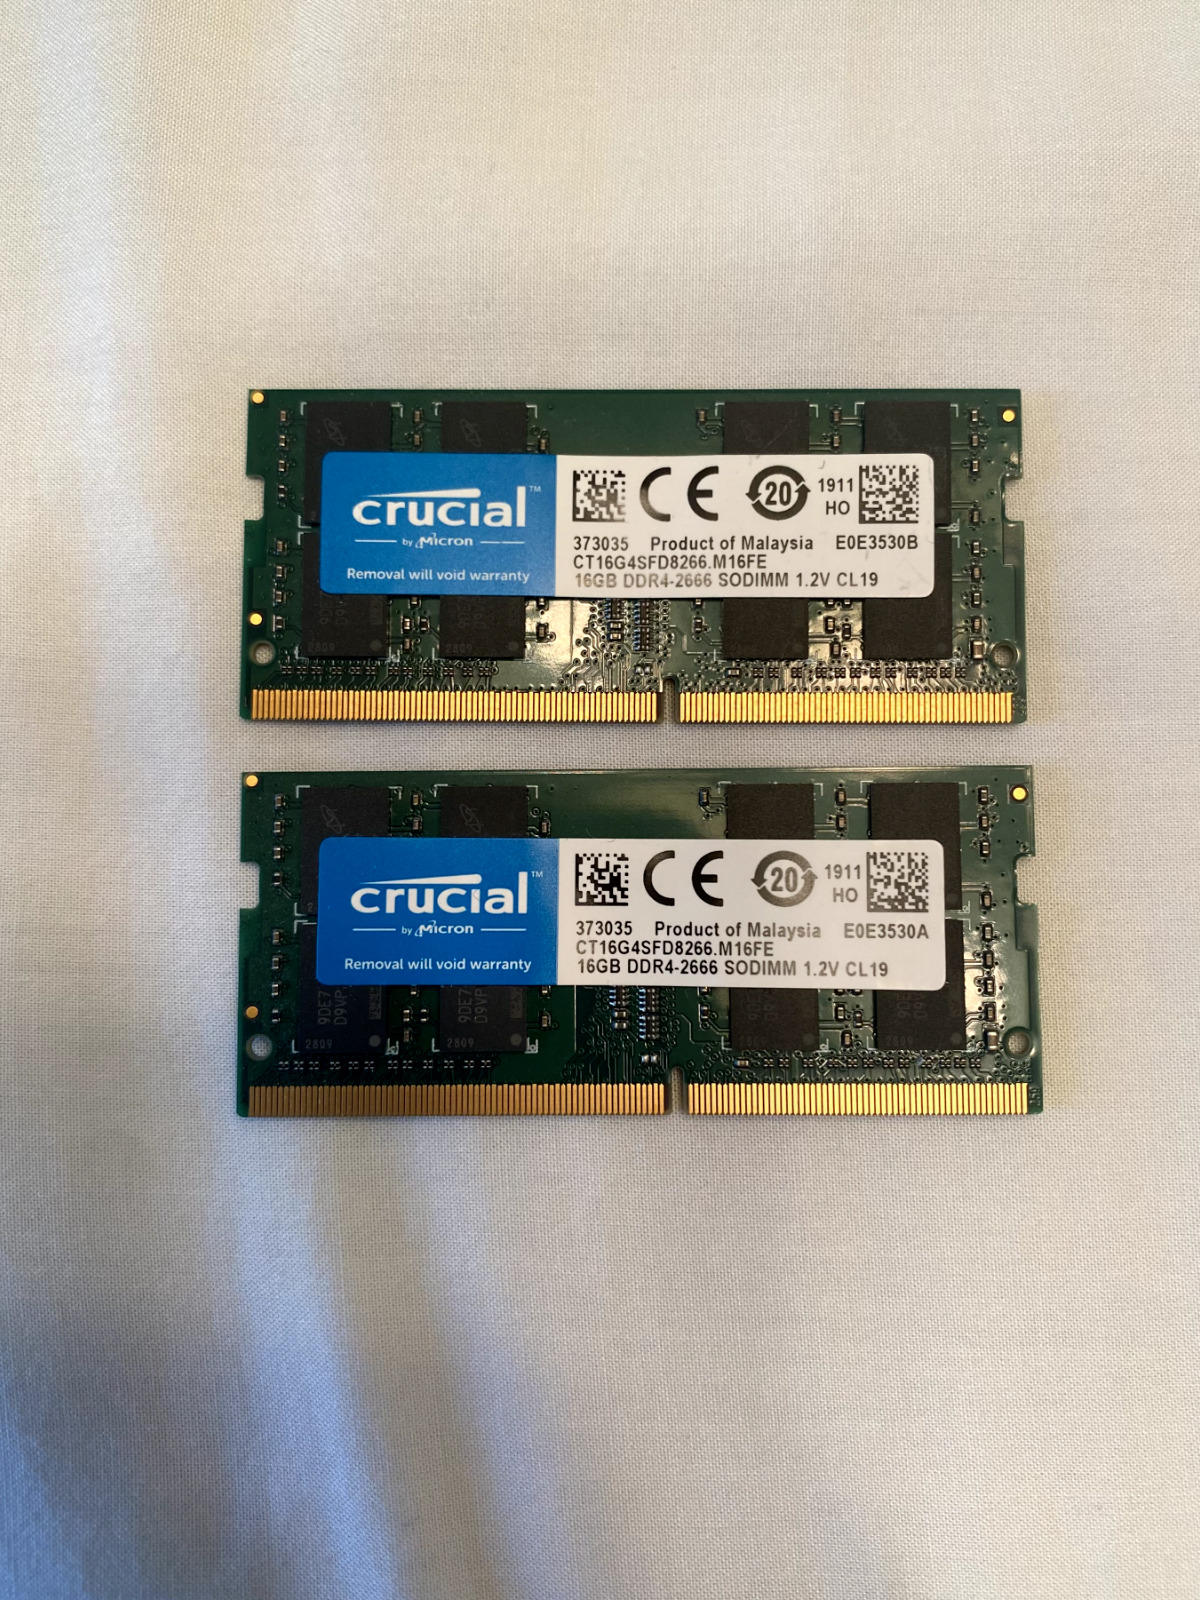 Crucial 32GB (2x16GB) DDR4-2666 SODIMM Memory RAM CT16G4SFD8266 - Works Great